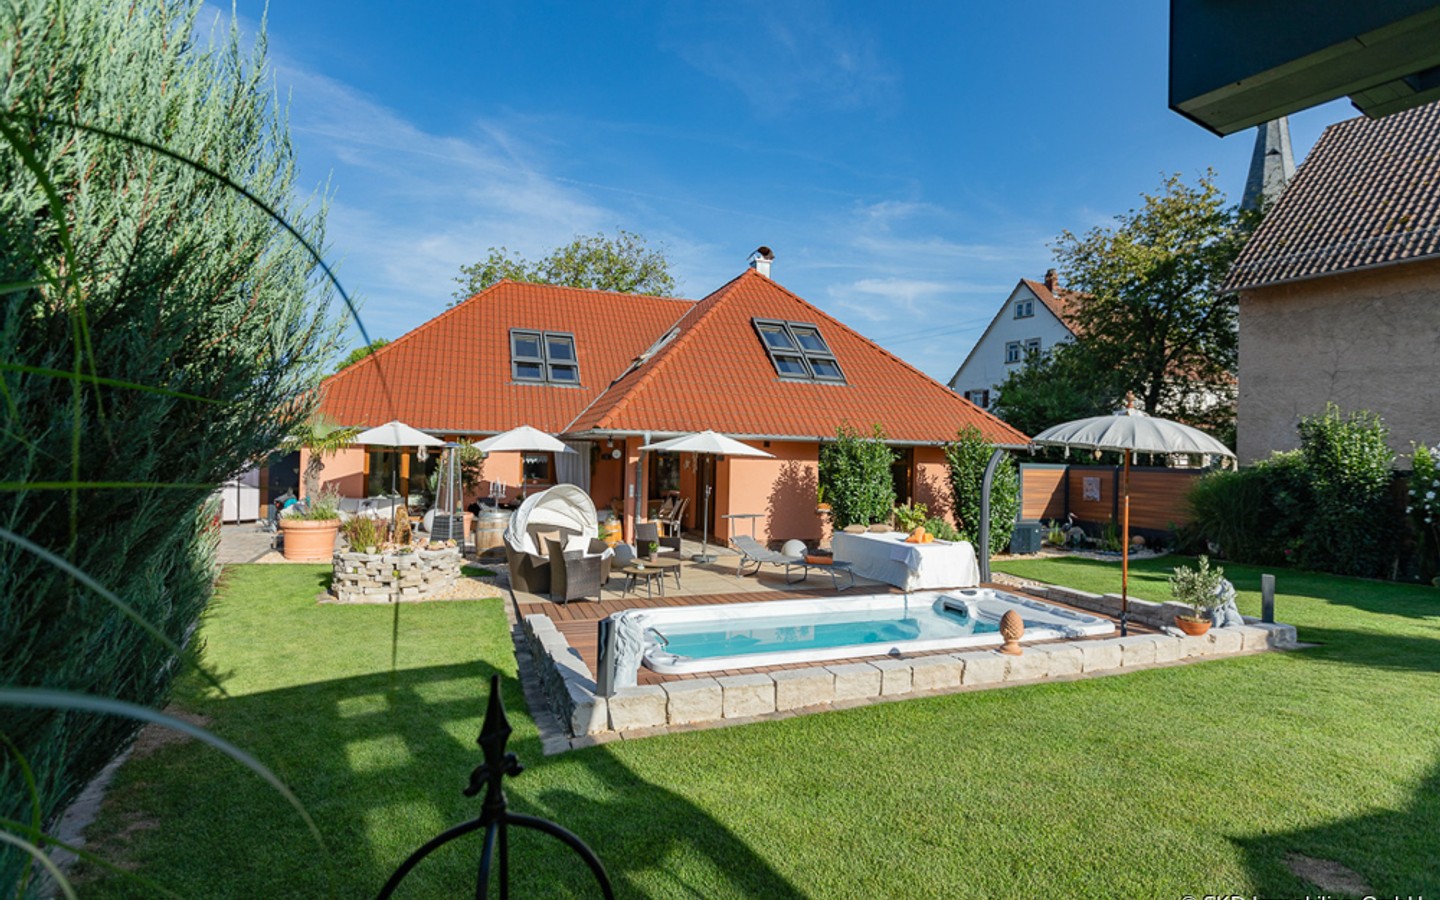 Wie im Urlaub: Hausrückansicht mit Pool - Mediterranes Wohnparadies in Aglasterhausen: Ein- bis Zweifamilienhaus mit Pool und Gartenparadies